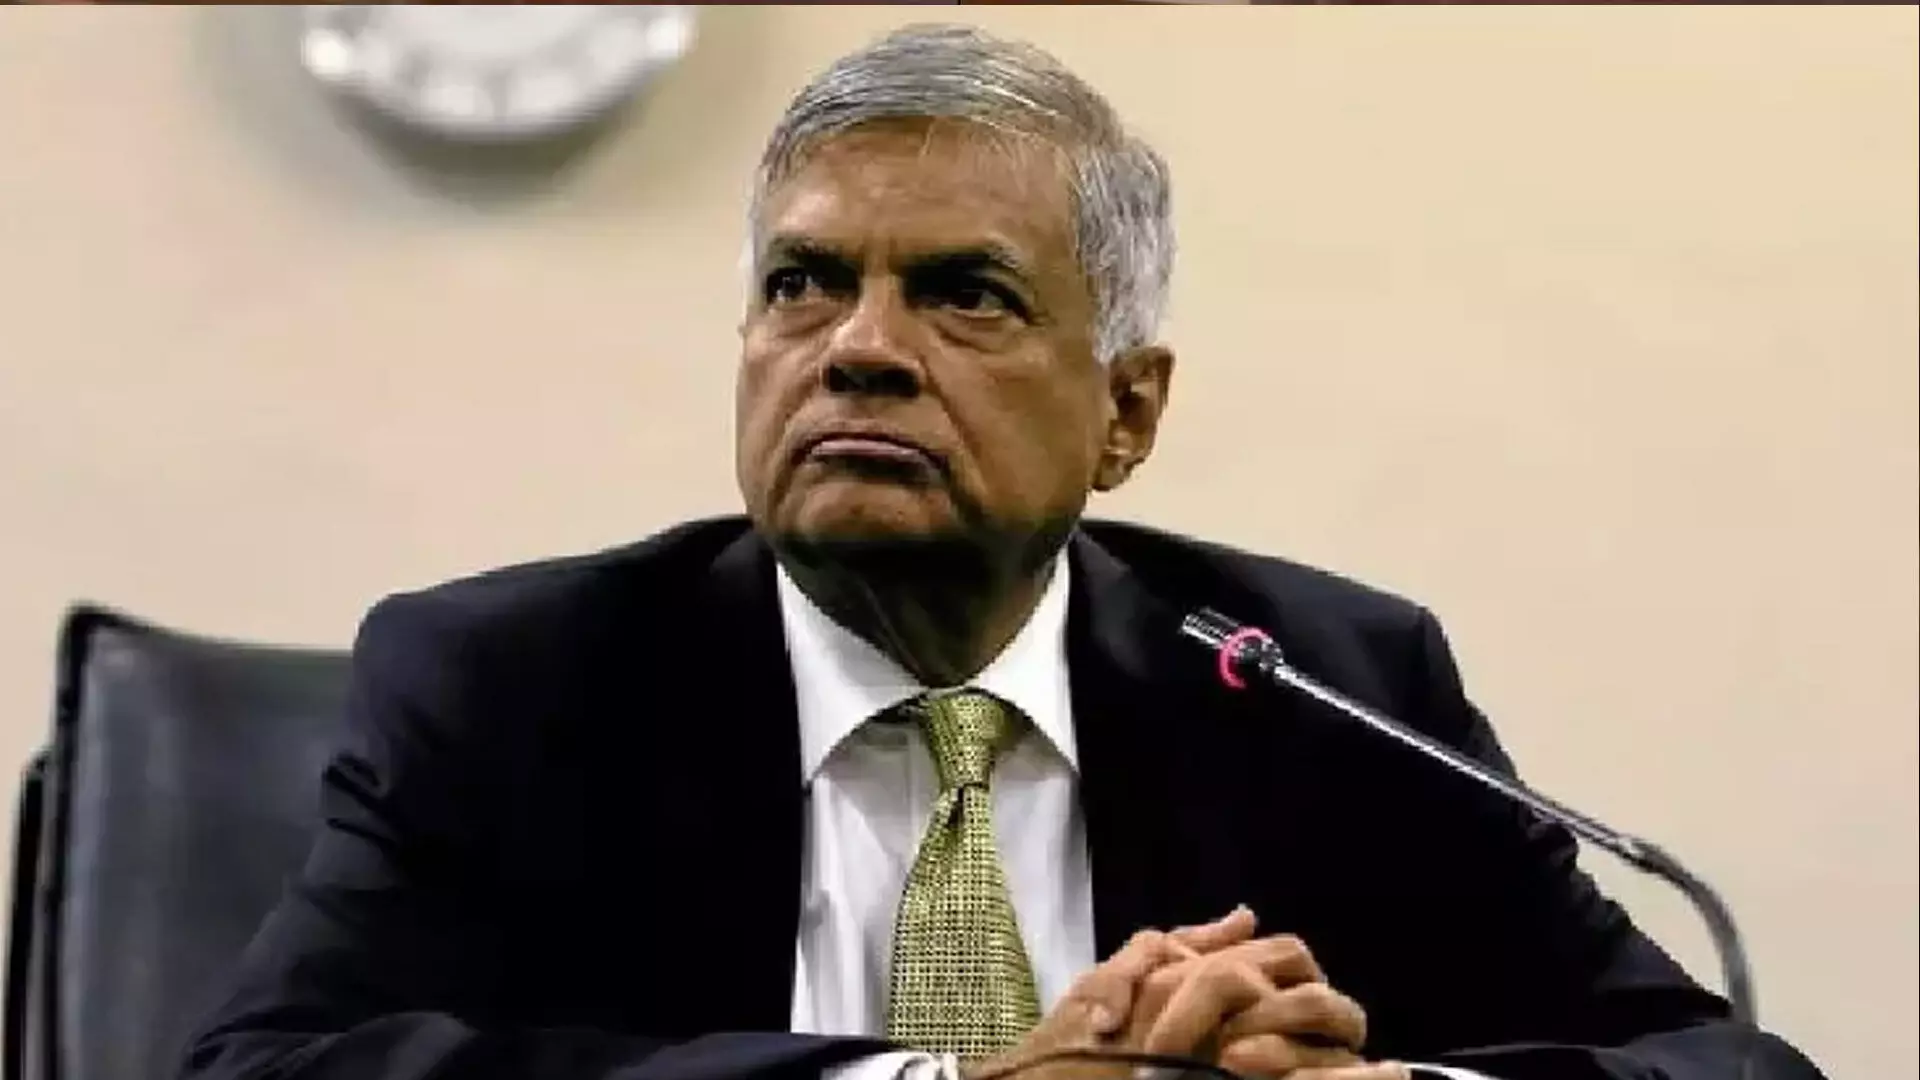 श्रीलंका के राष्ट्रपति विक्रमसिंघे फिर से चुनाव लड़ेंगे- मंत्री